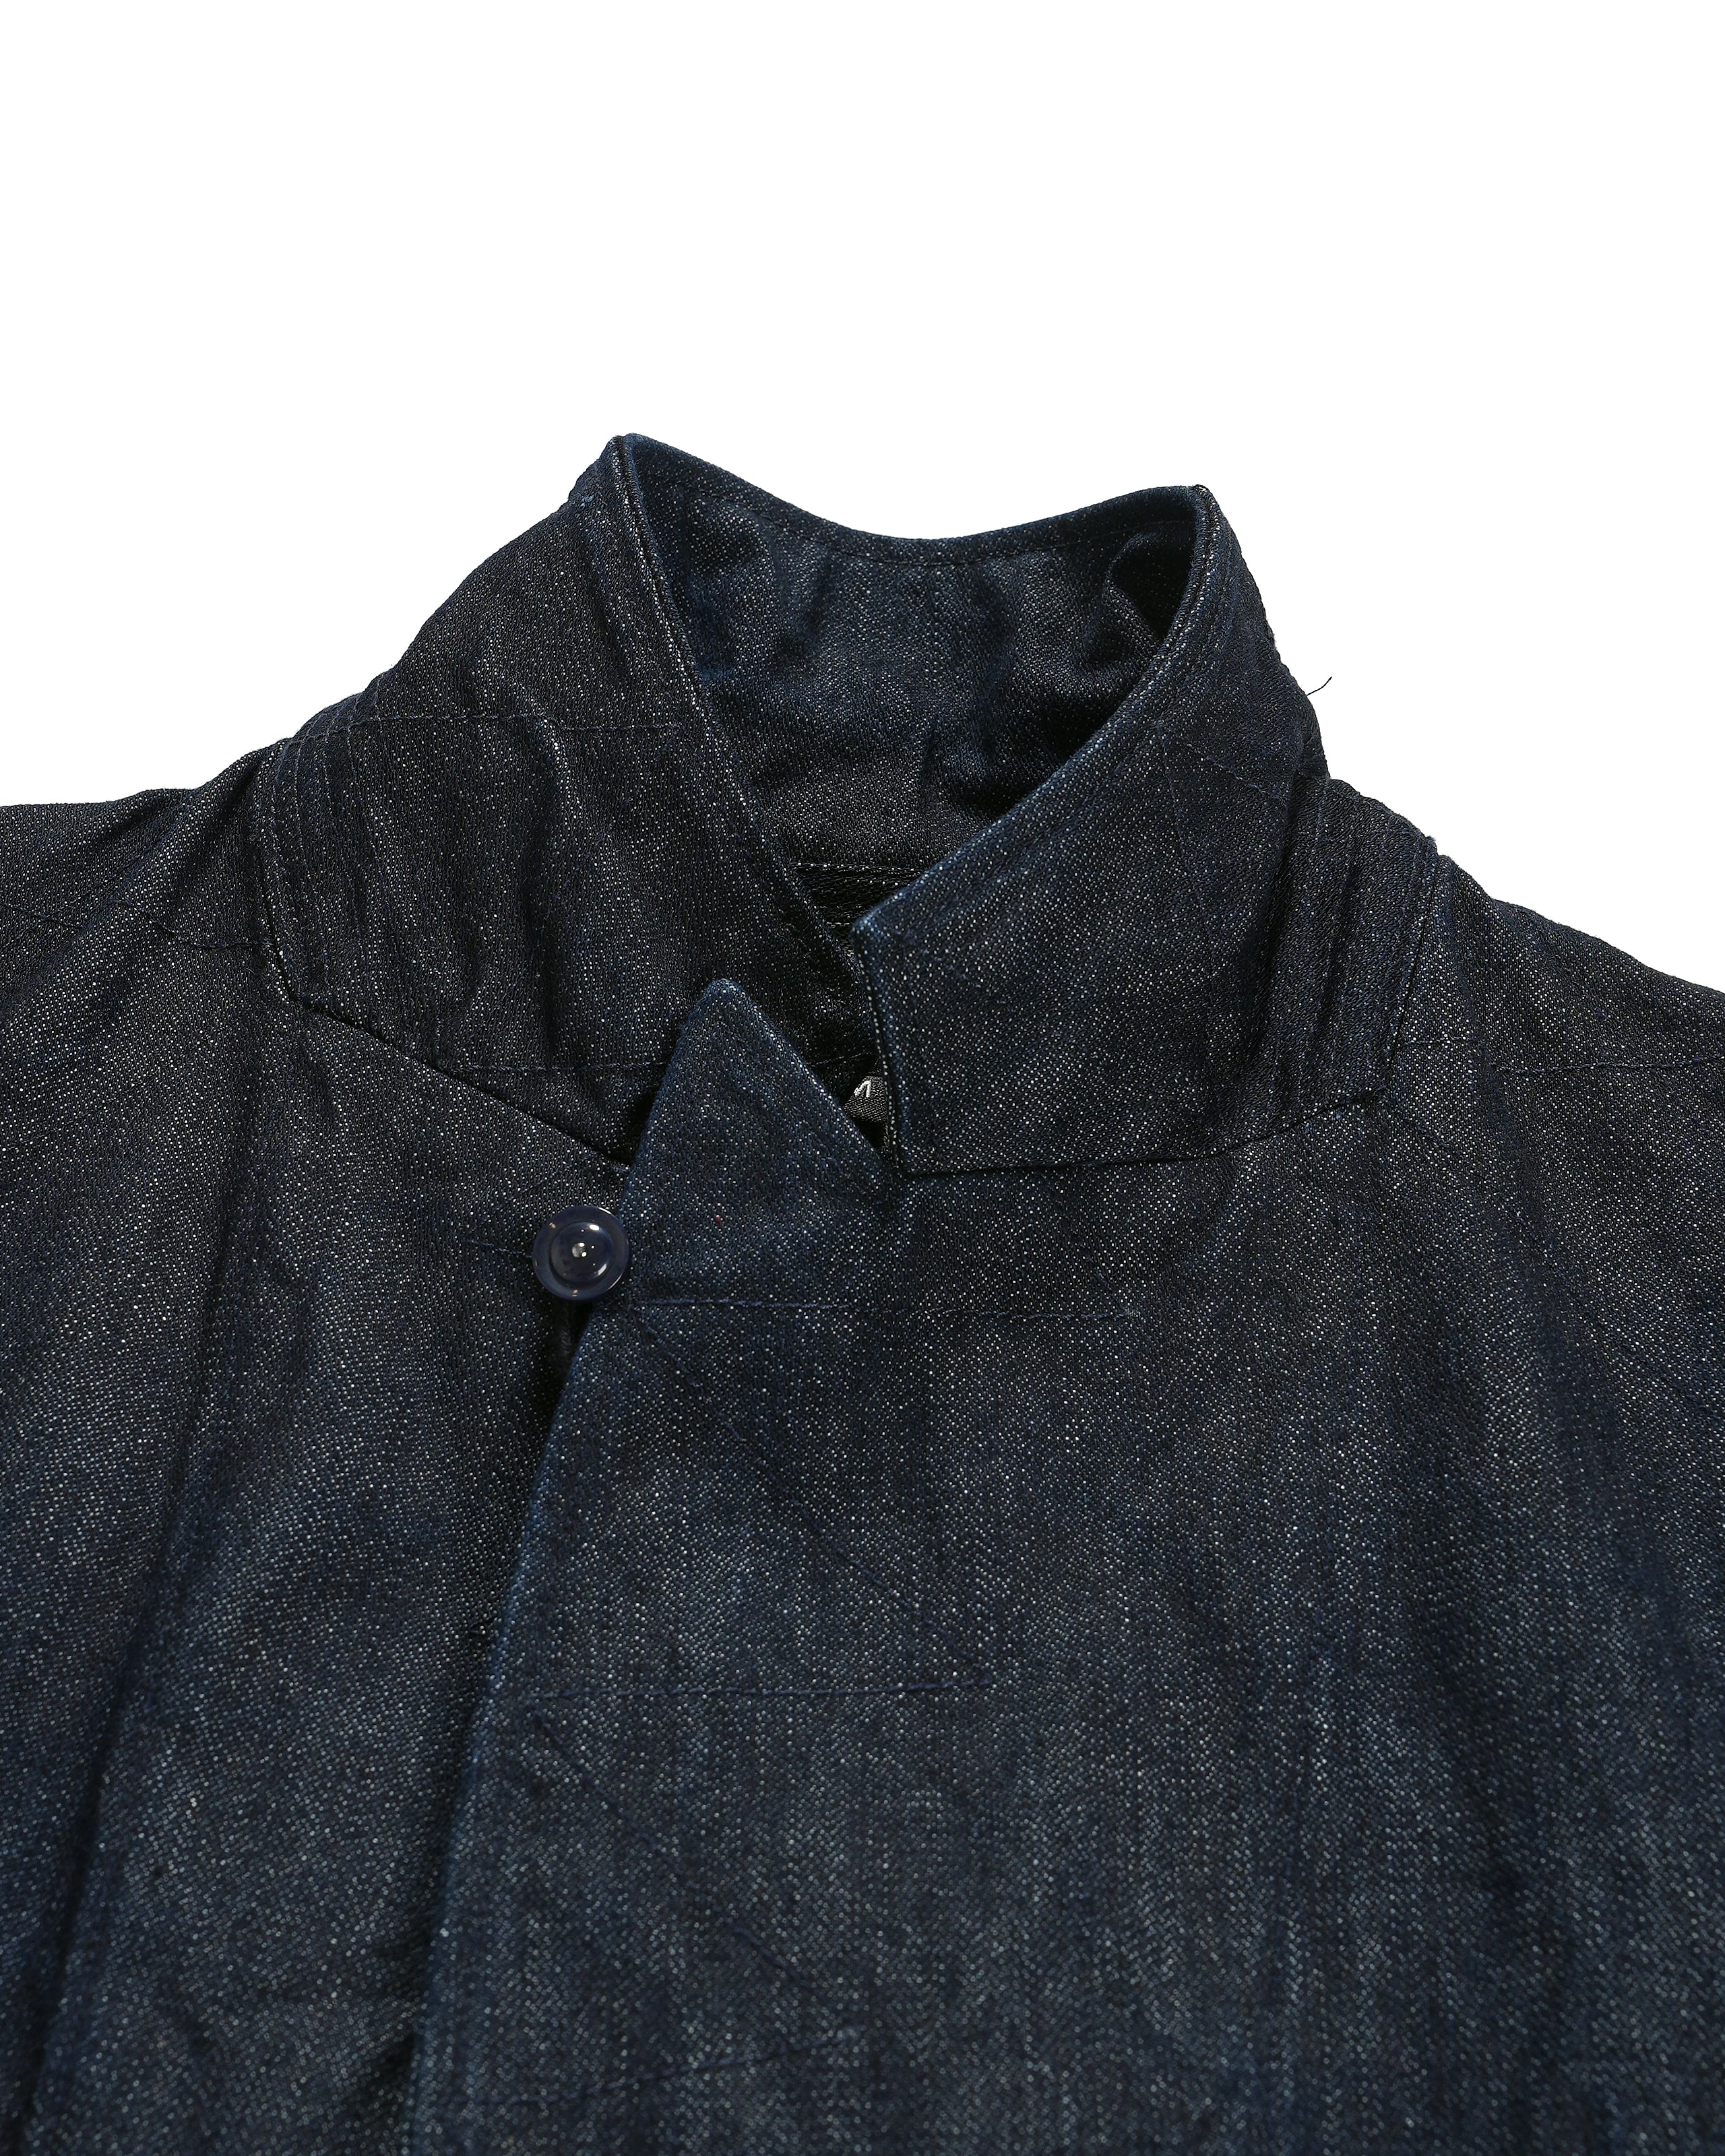 Bedford Jacket - Indigo Cotton Broken Denim